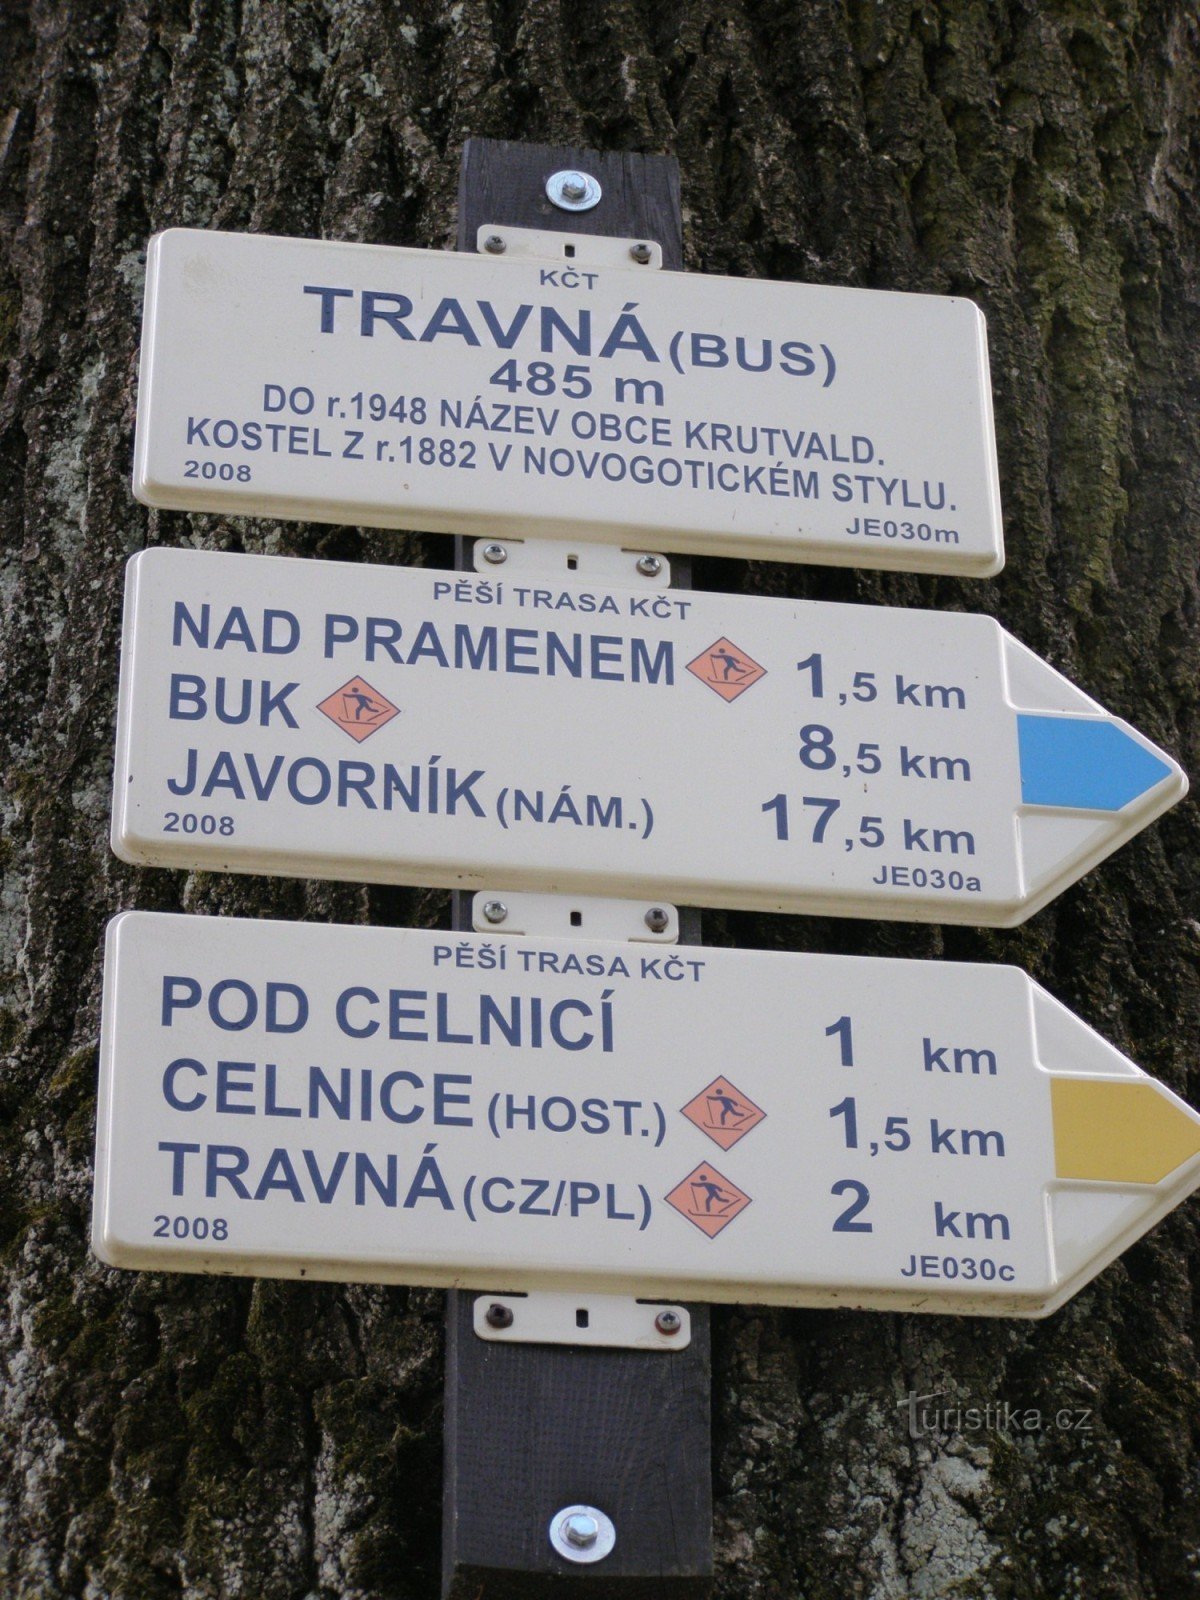 răscruce turistică Travná - autobuz